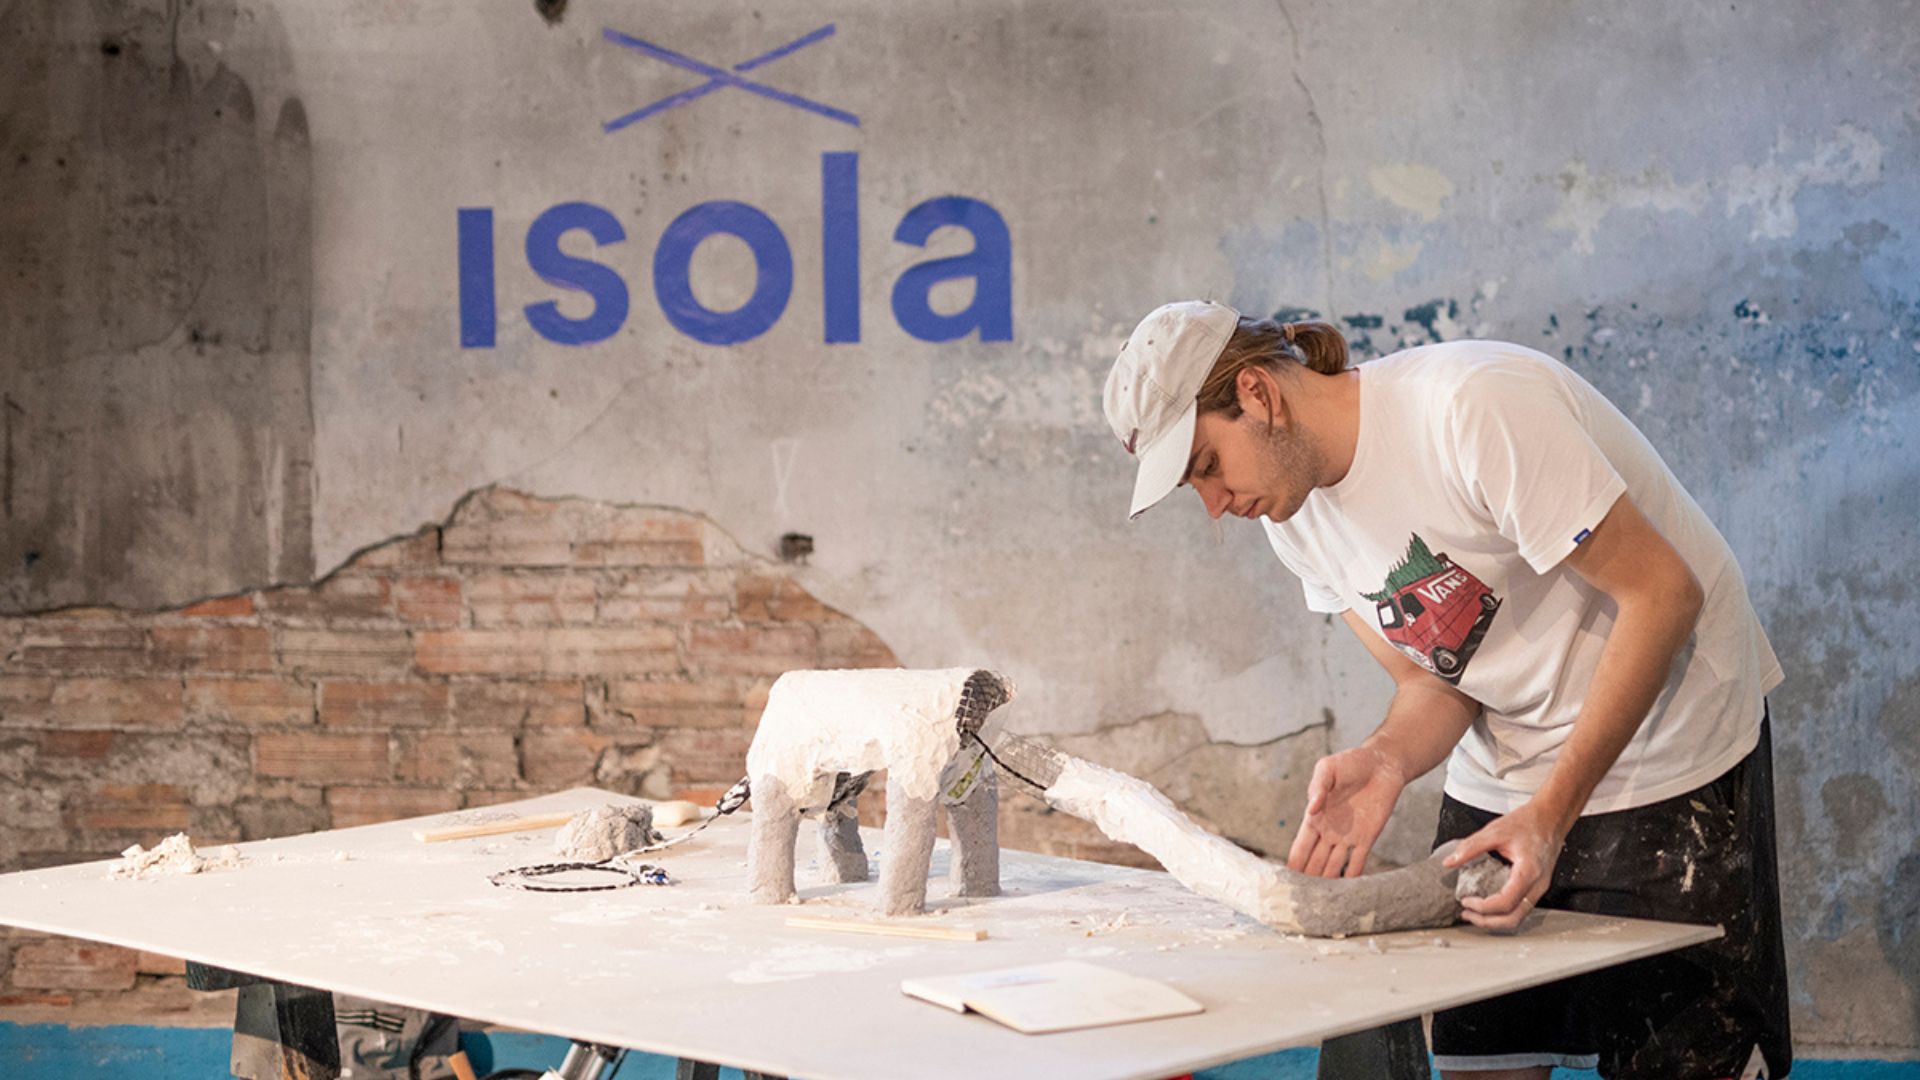 Isola Design Festival 2023, Festivals in Italy